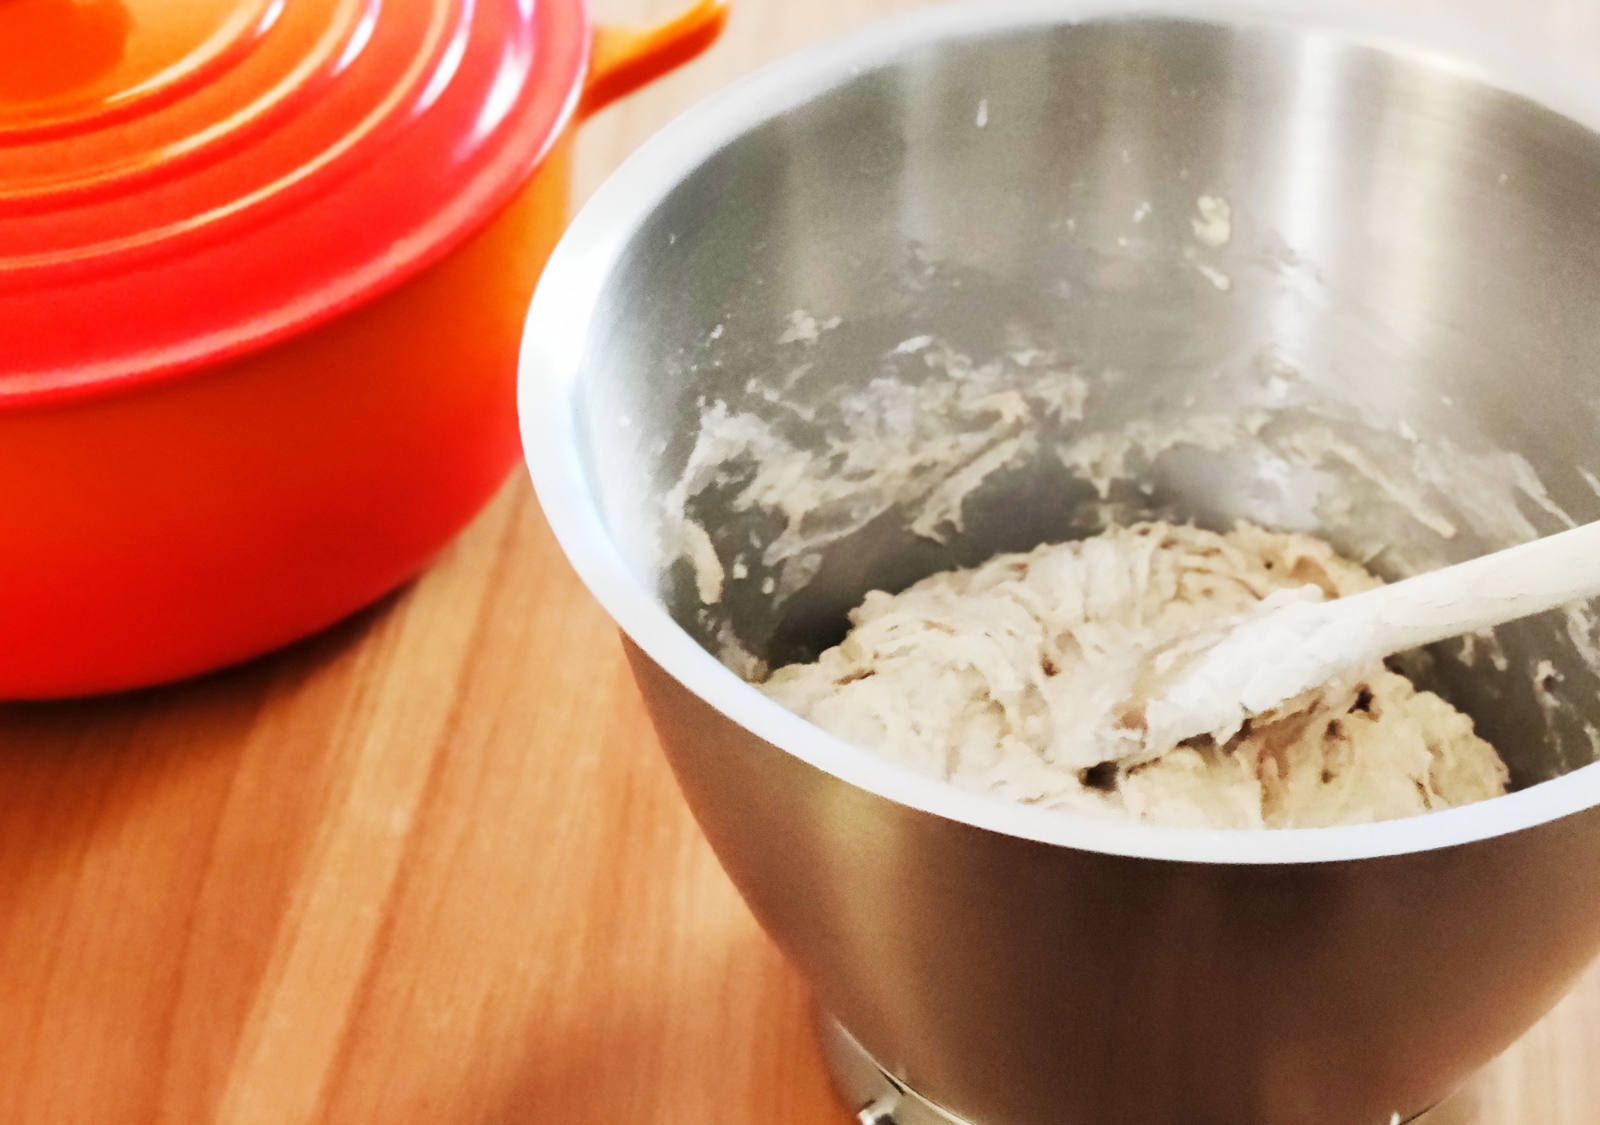 Bread in a pot: Make the dough